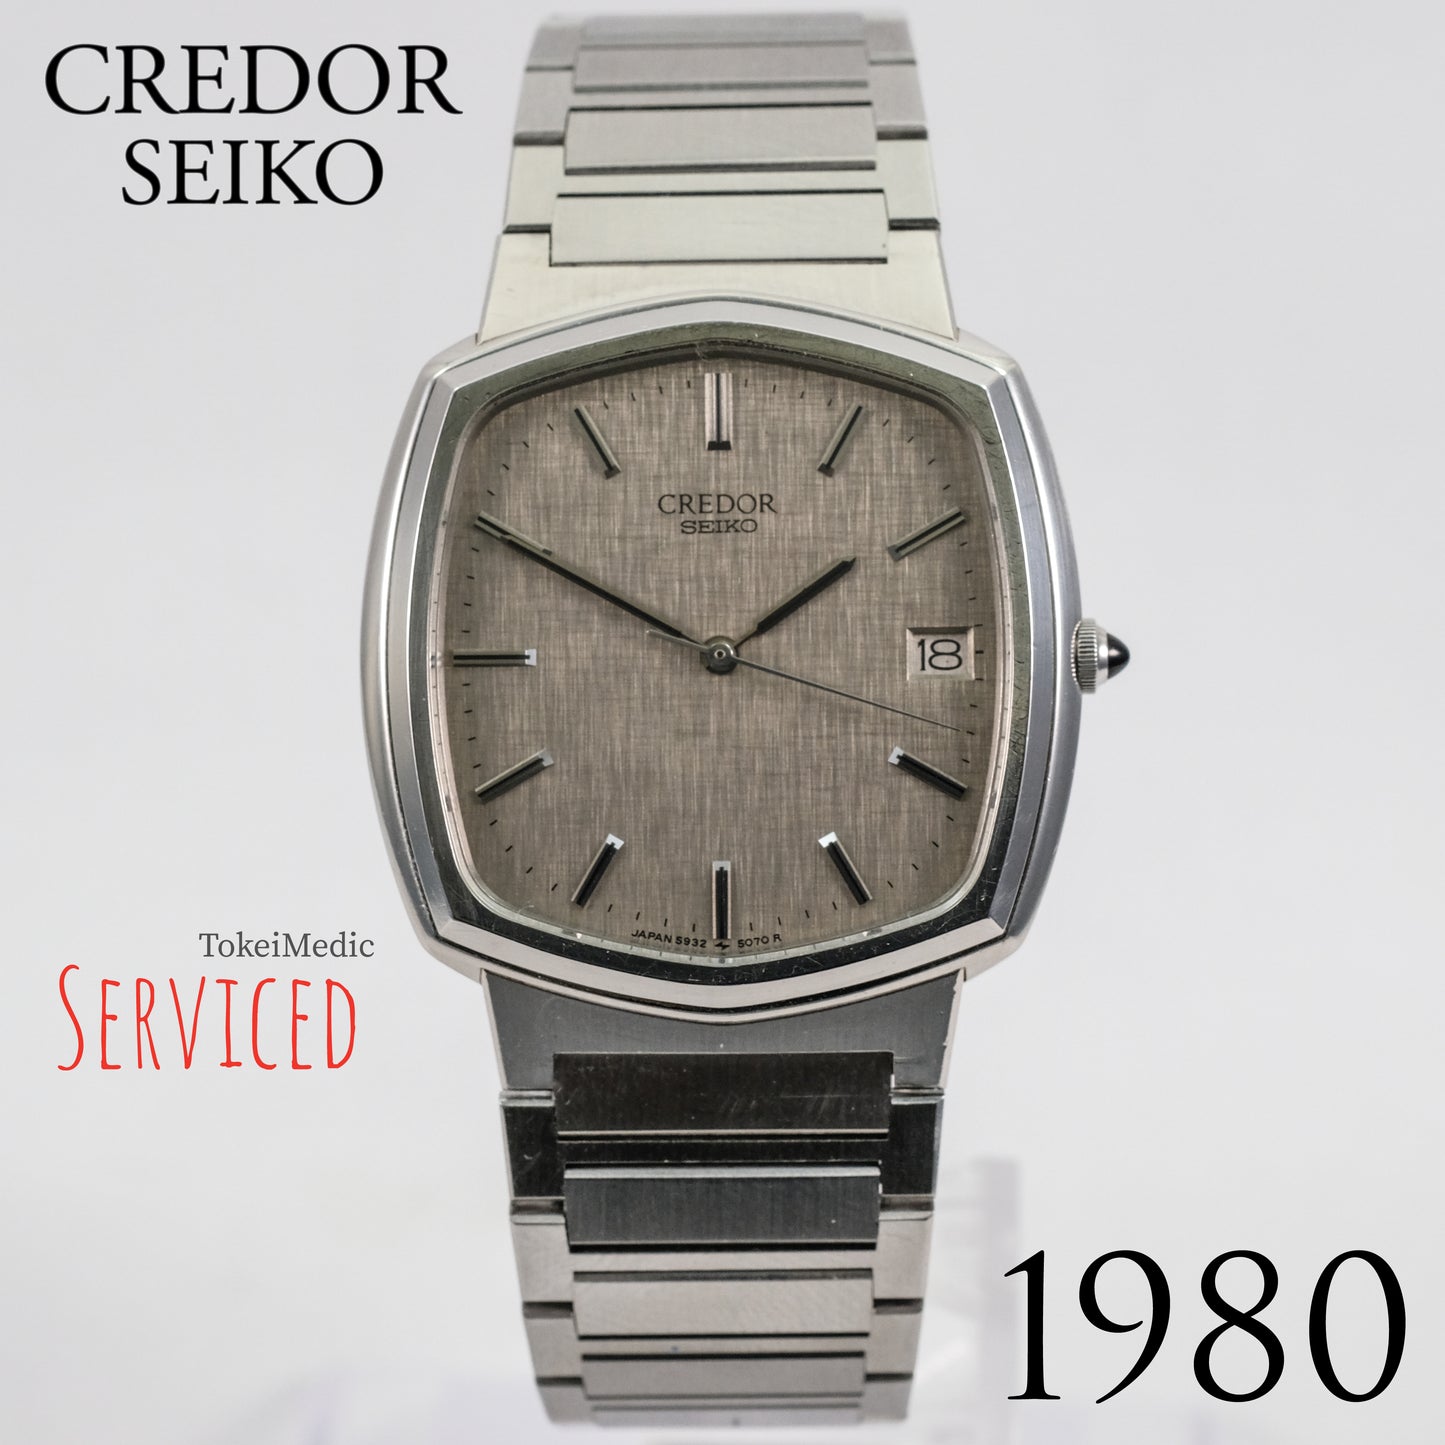 1980 Credor Seiko 5932-5040